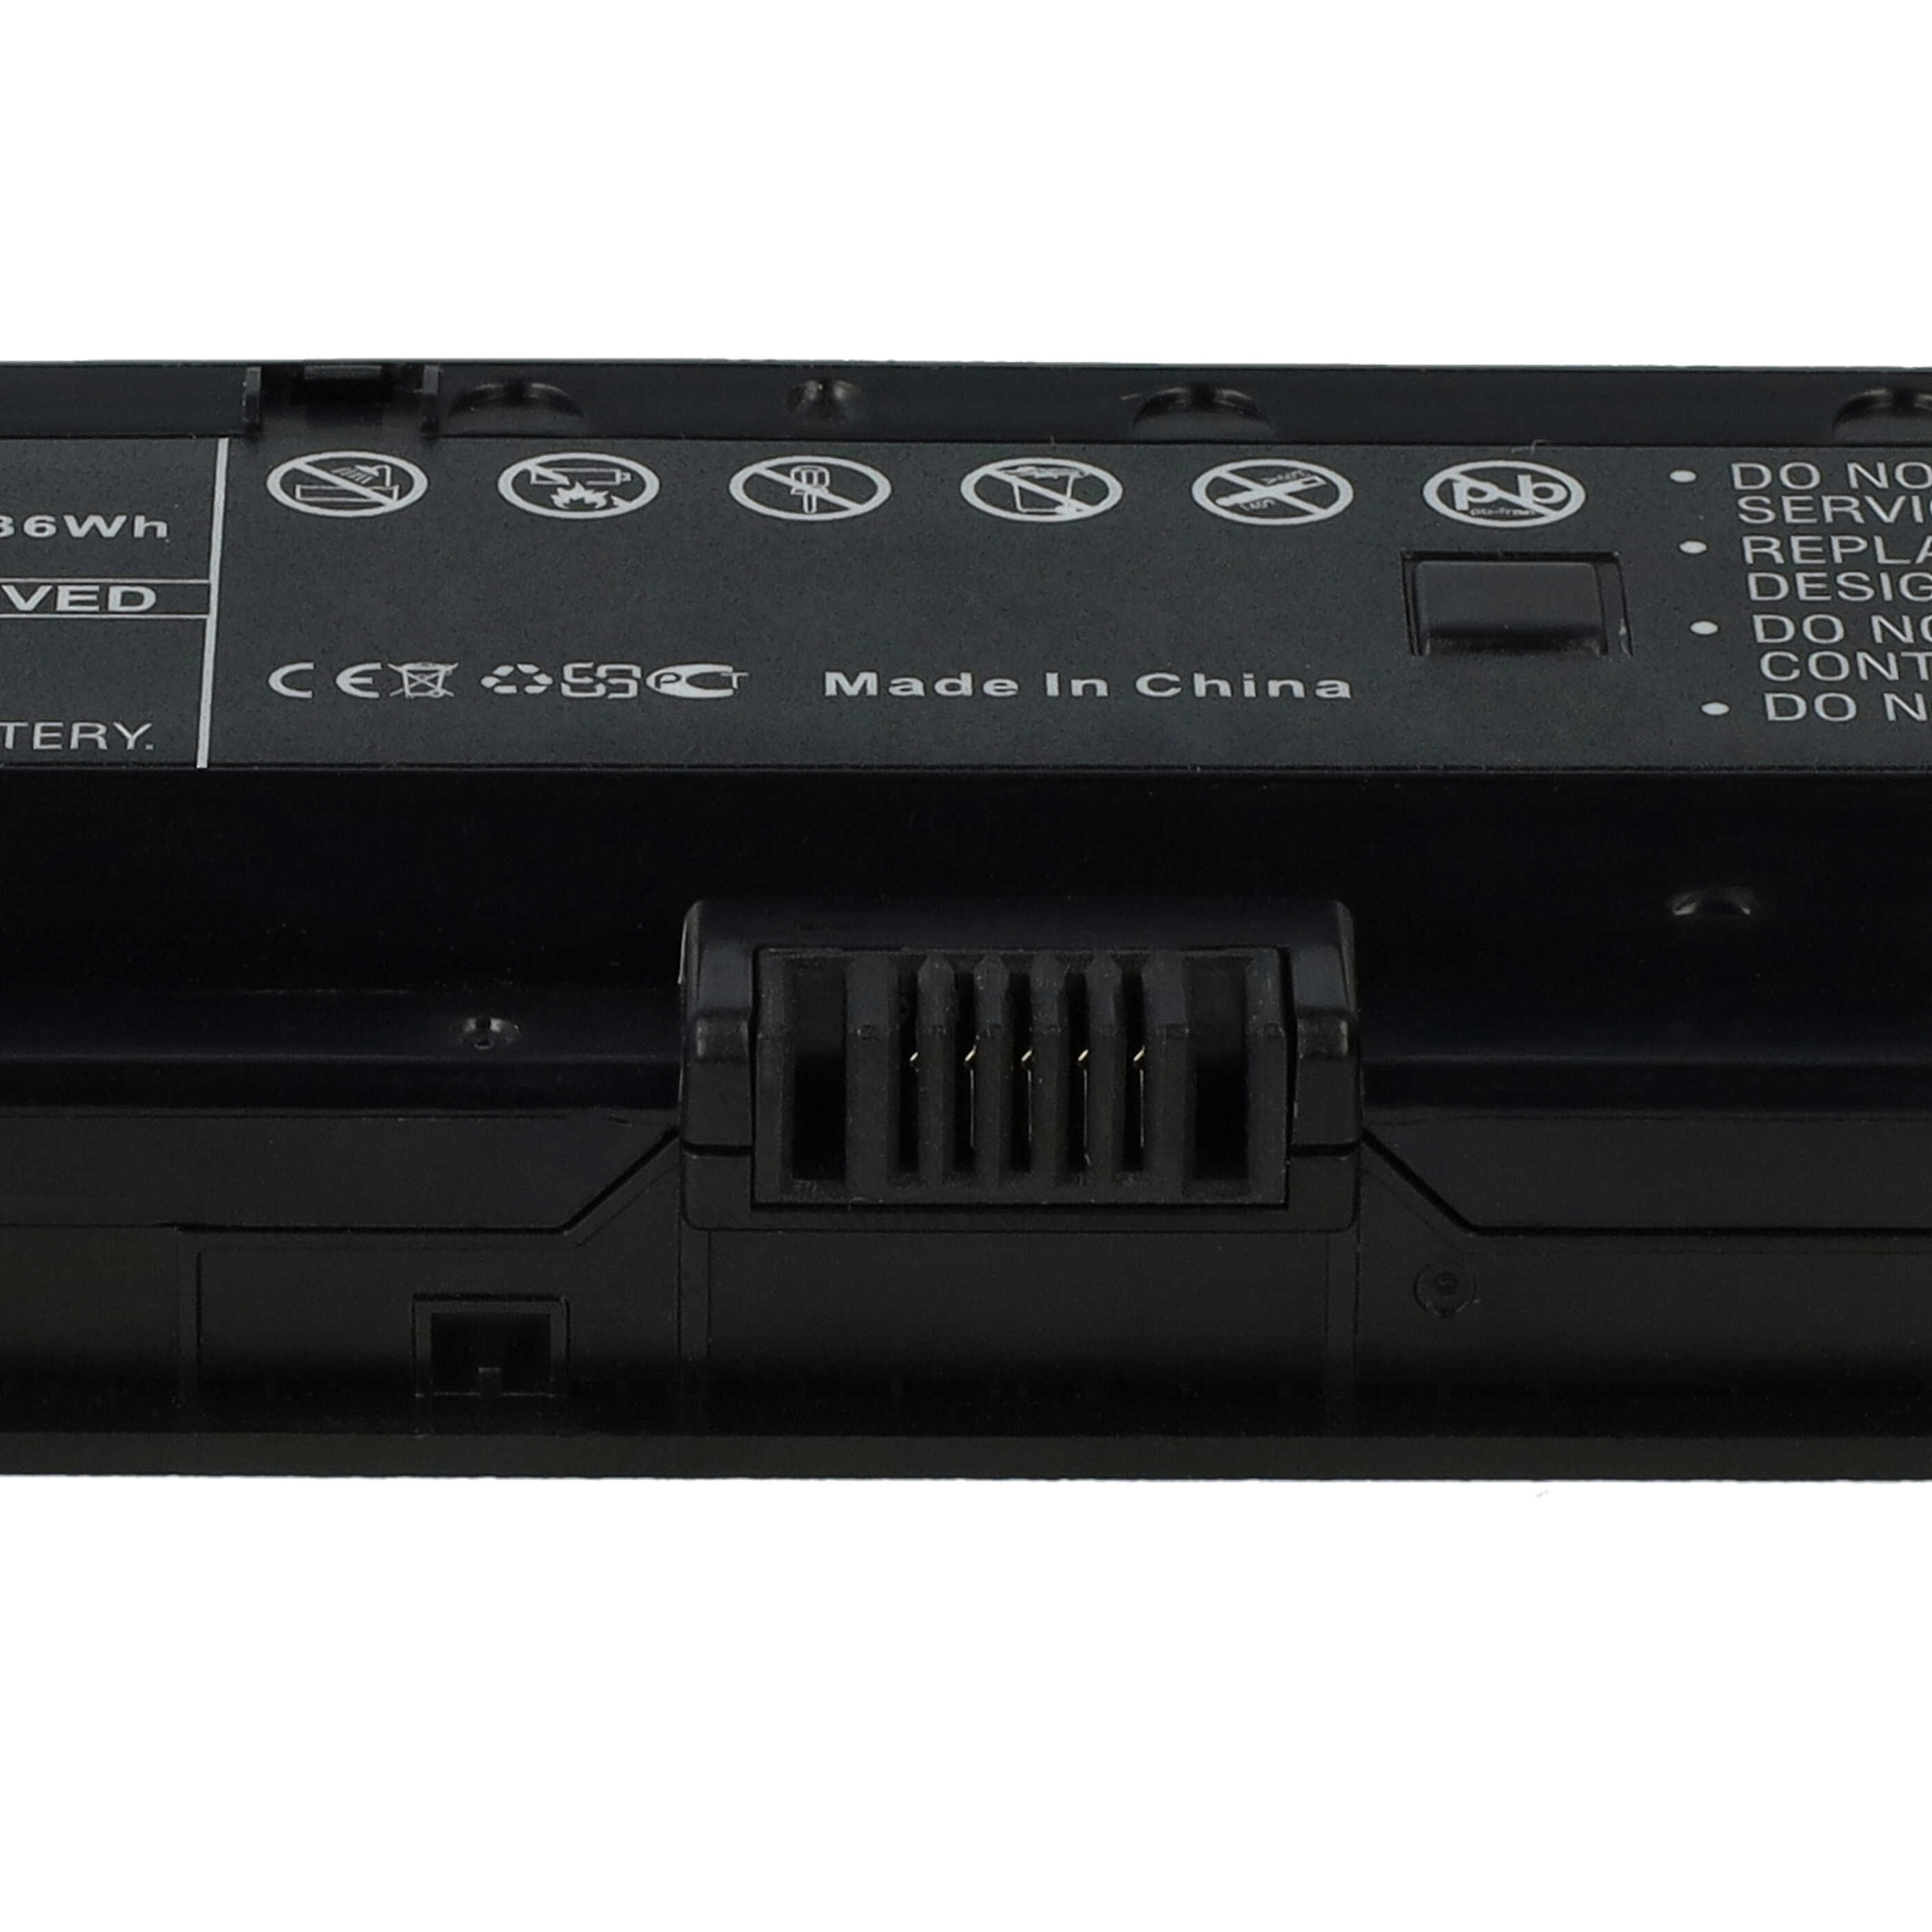 Batterie remplace Clevo NB50BAT-6 pour ordinateur portable - 4200mAh 10,8V Li-ion